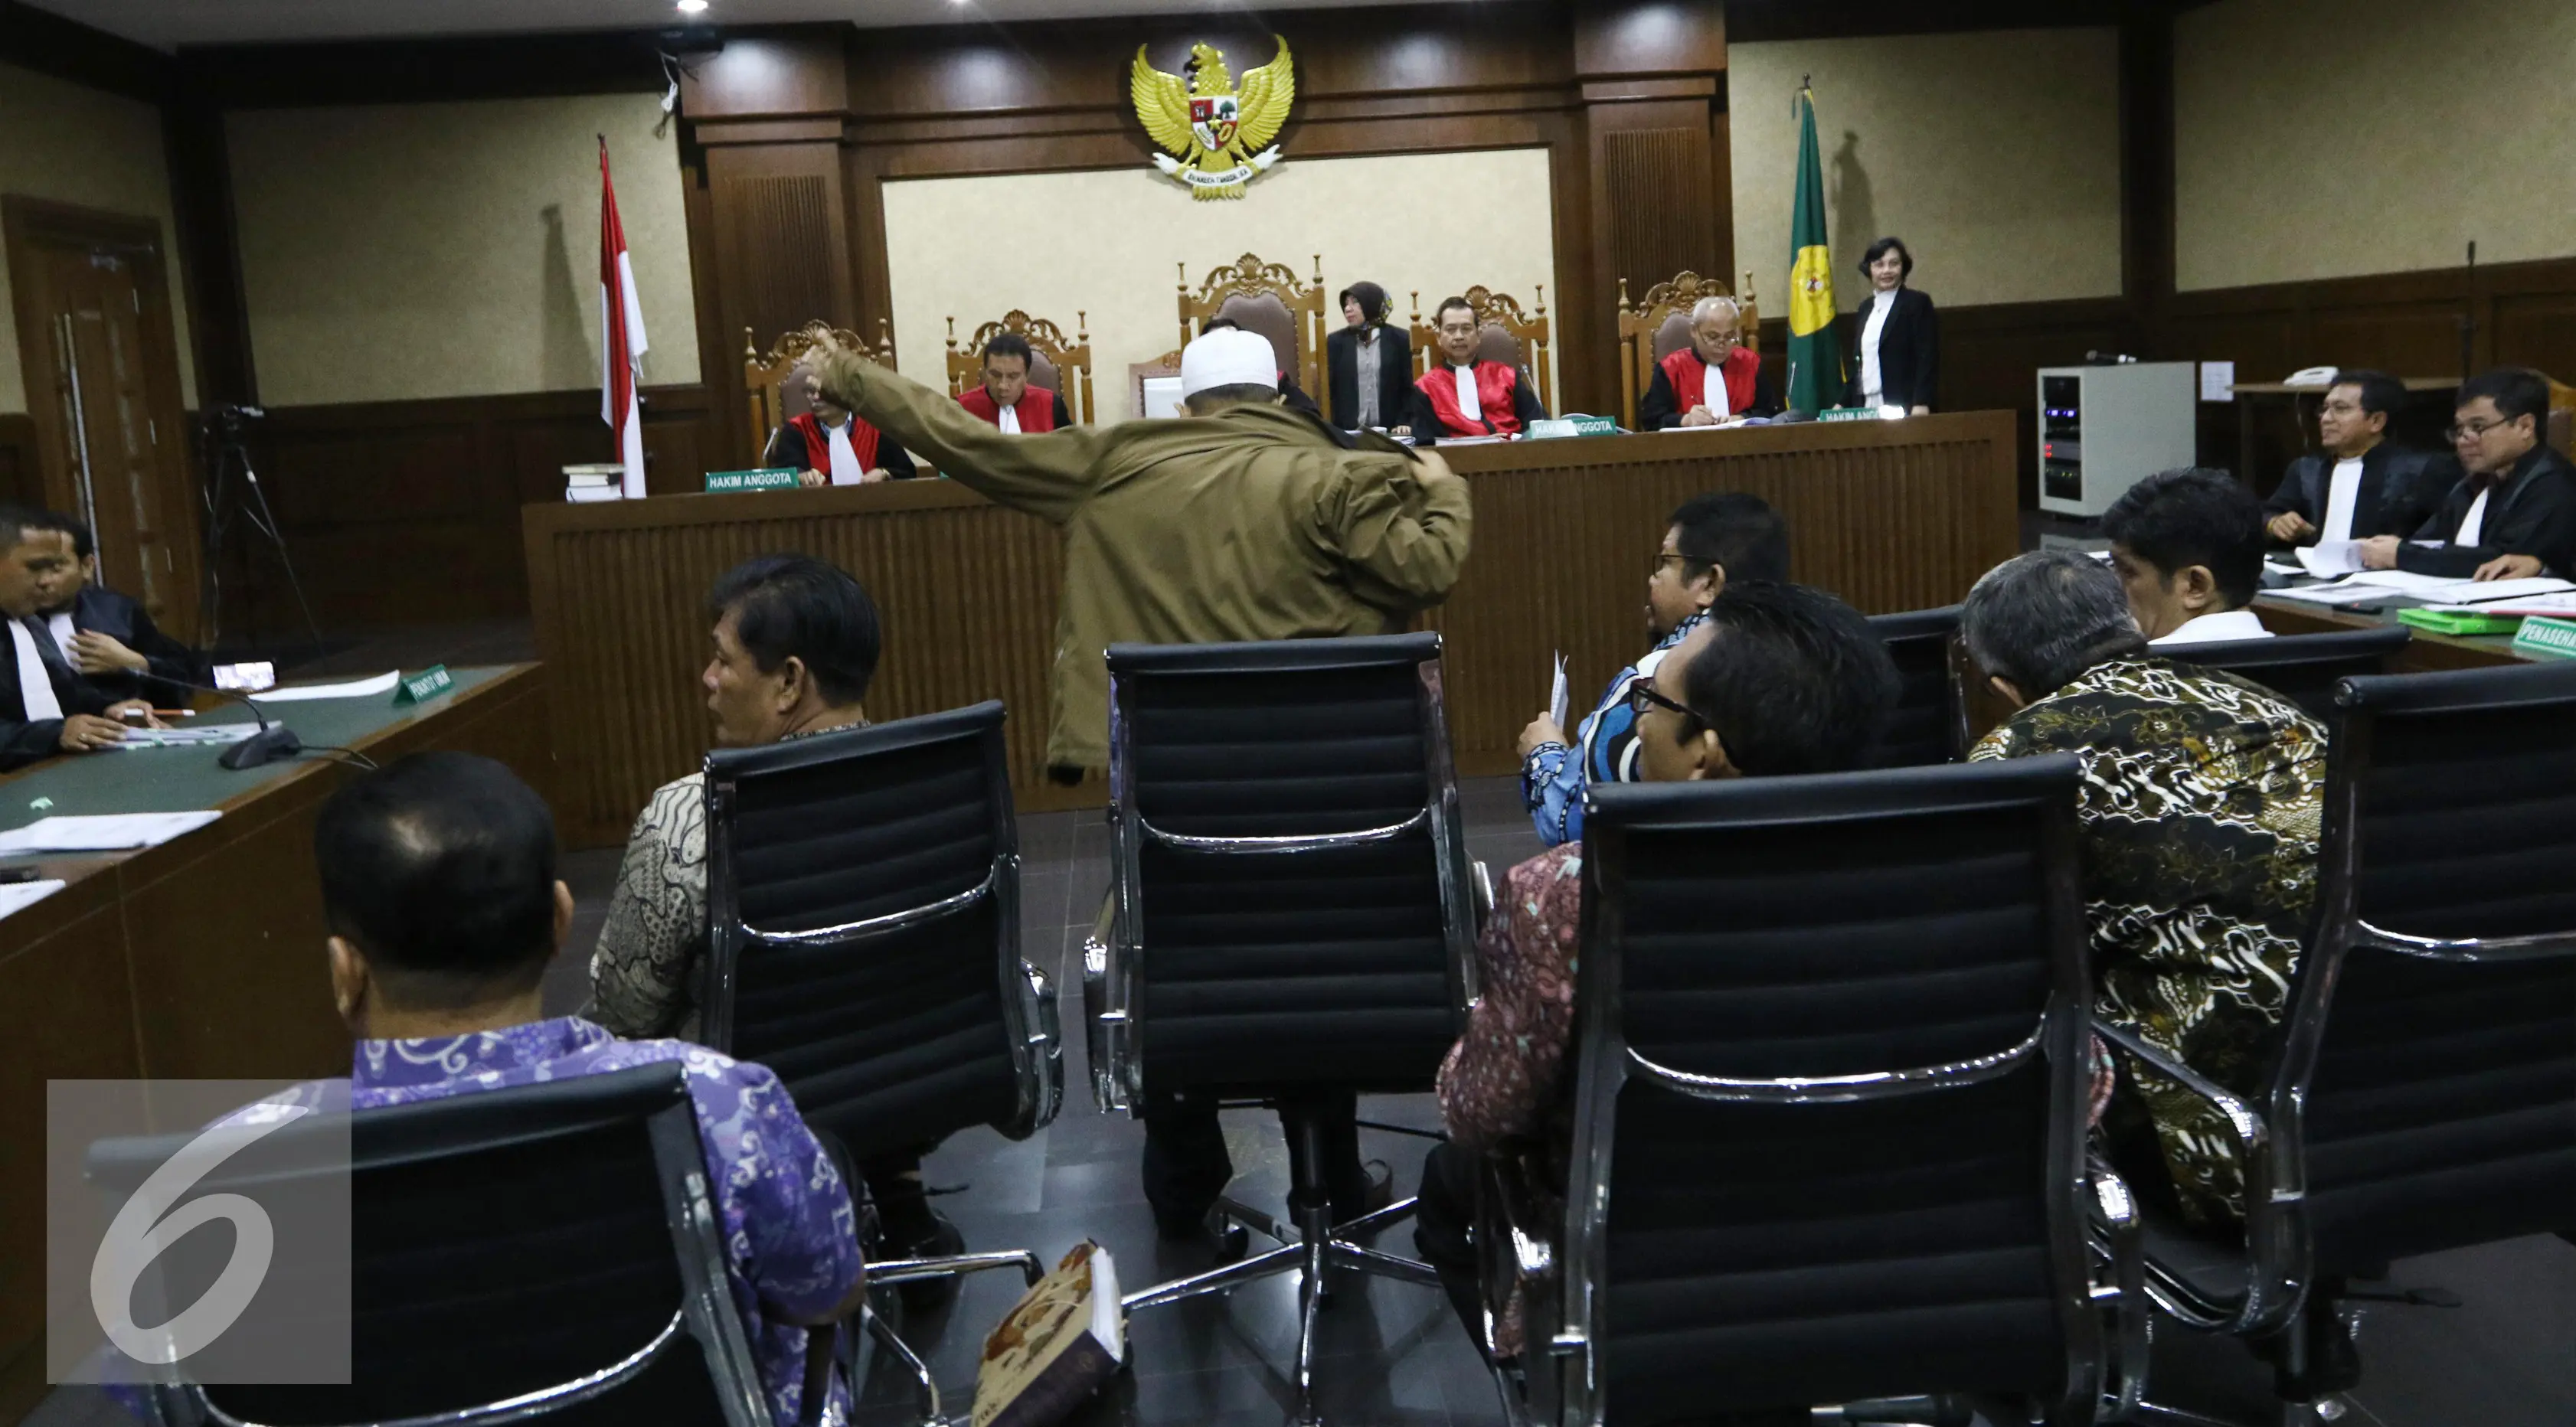 Suasana setelah sidang tujuh anggota DPRD Provinsi Sumatera Utara (Sumut) kasus suap dari Gatot Pujo Nugroho di pengadilan Tipikor, Jakarta,  Rabu (26/10). (Liputan6.com/Helmi Affandi)